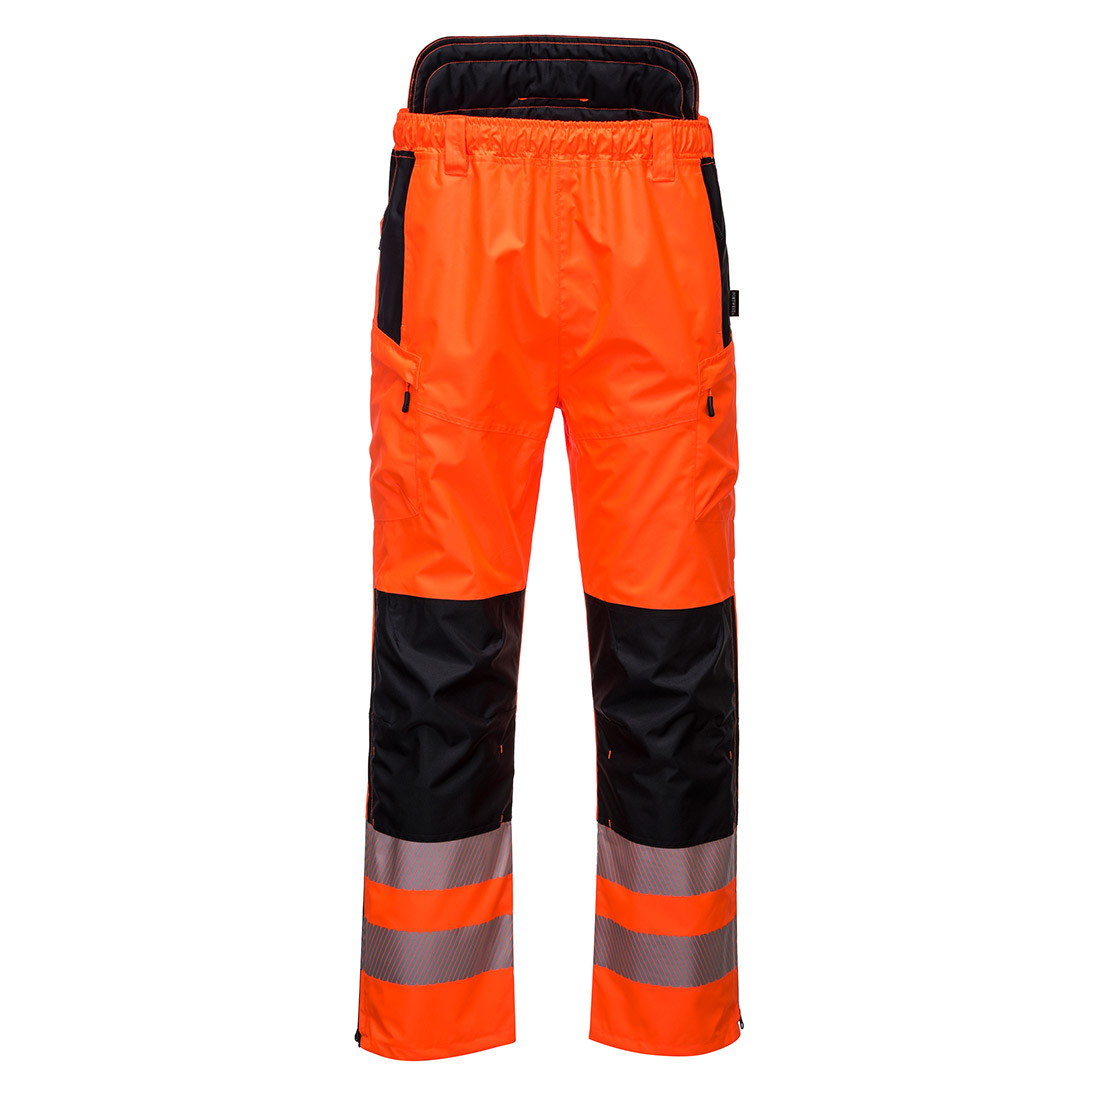 PW3 Pantalone Hi-Vis Extreme - Abbigliamento di protezione